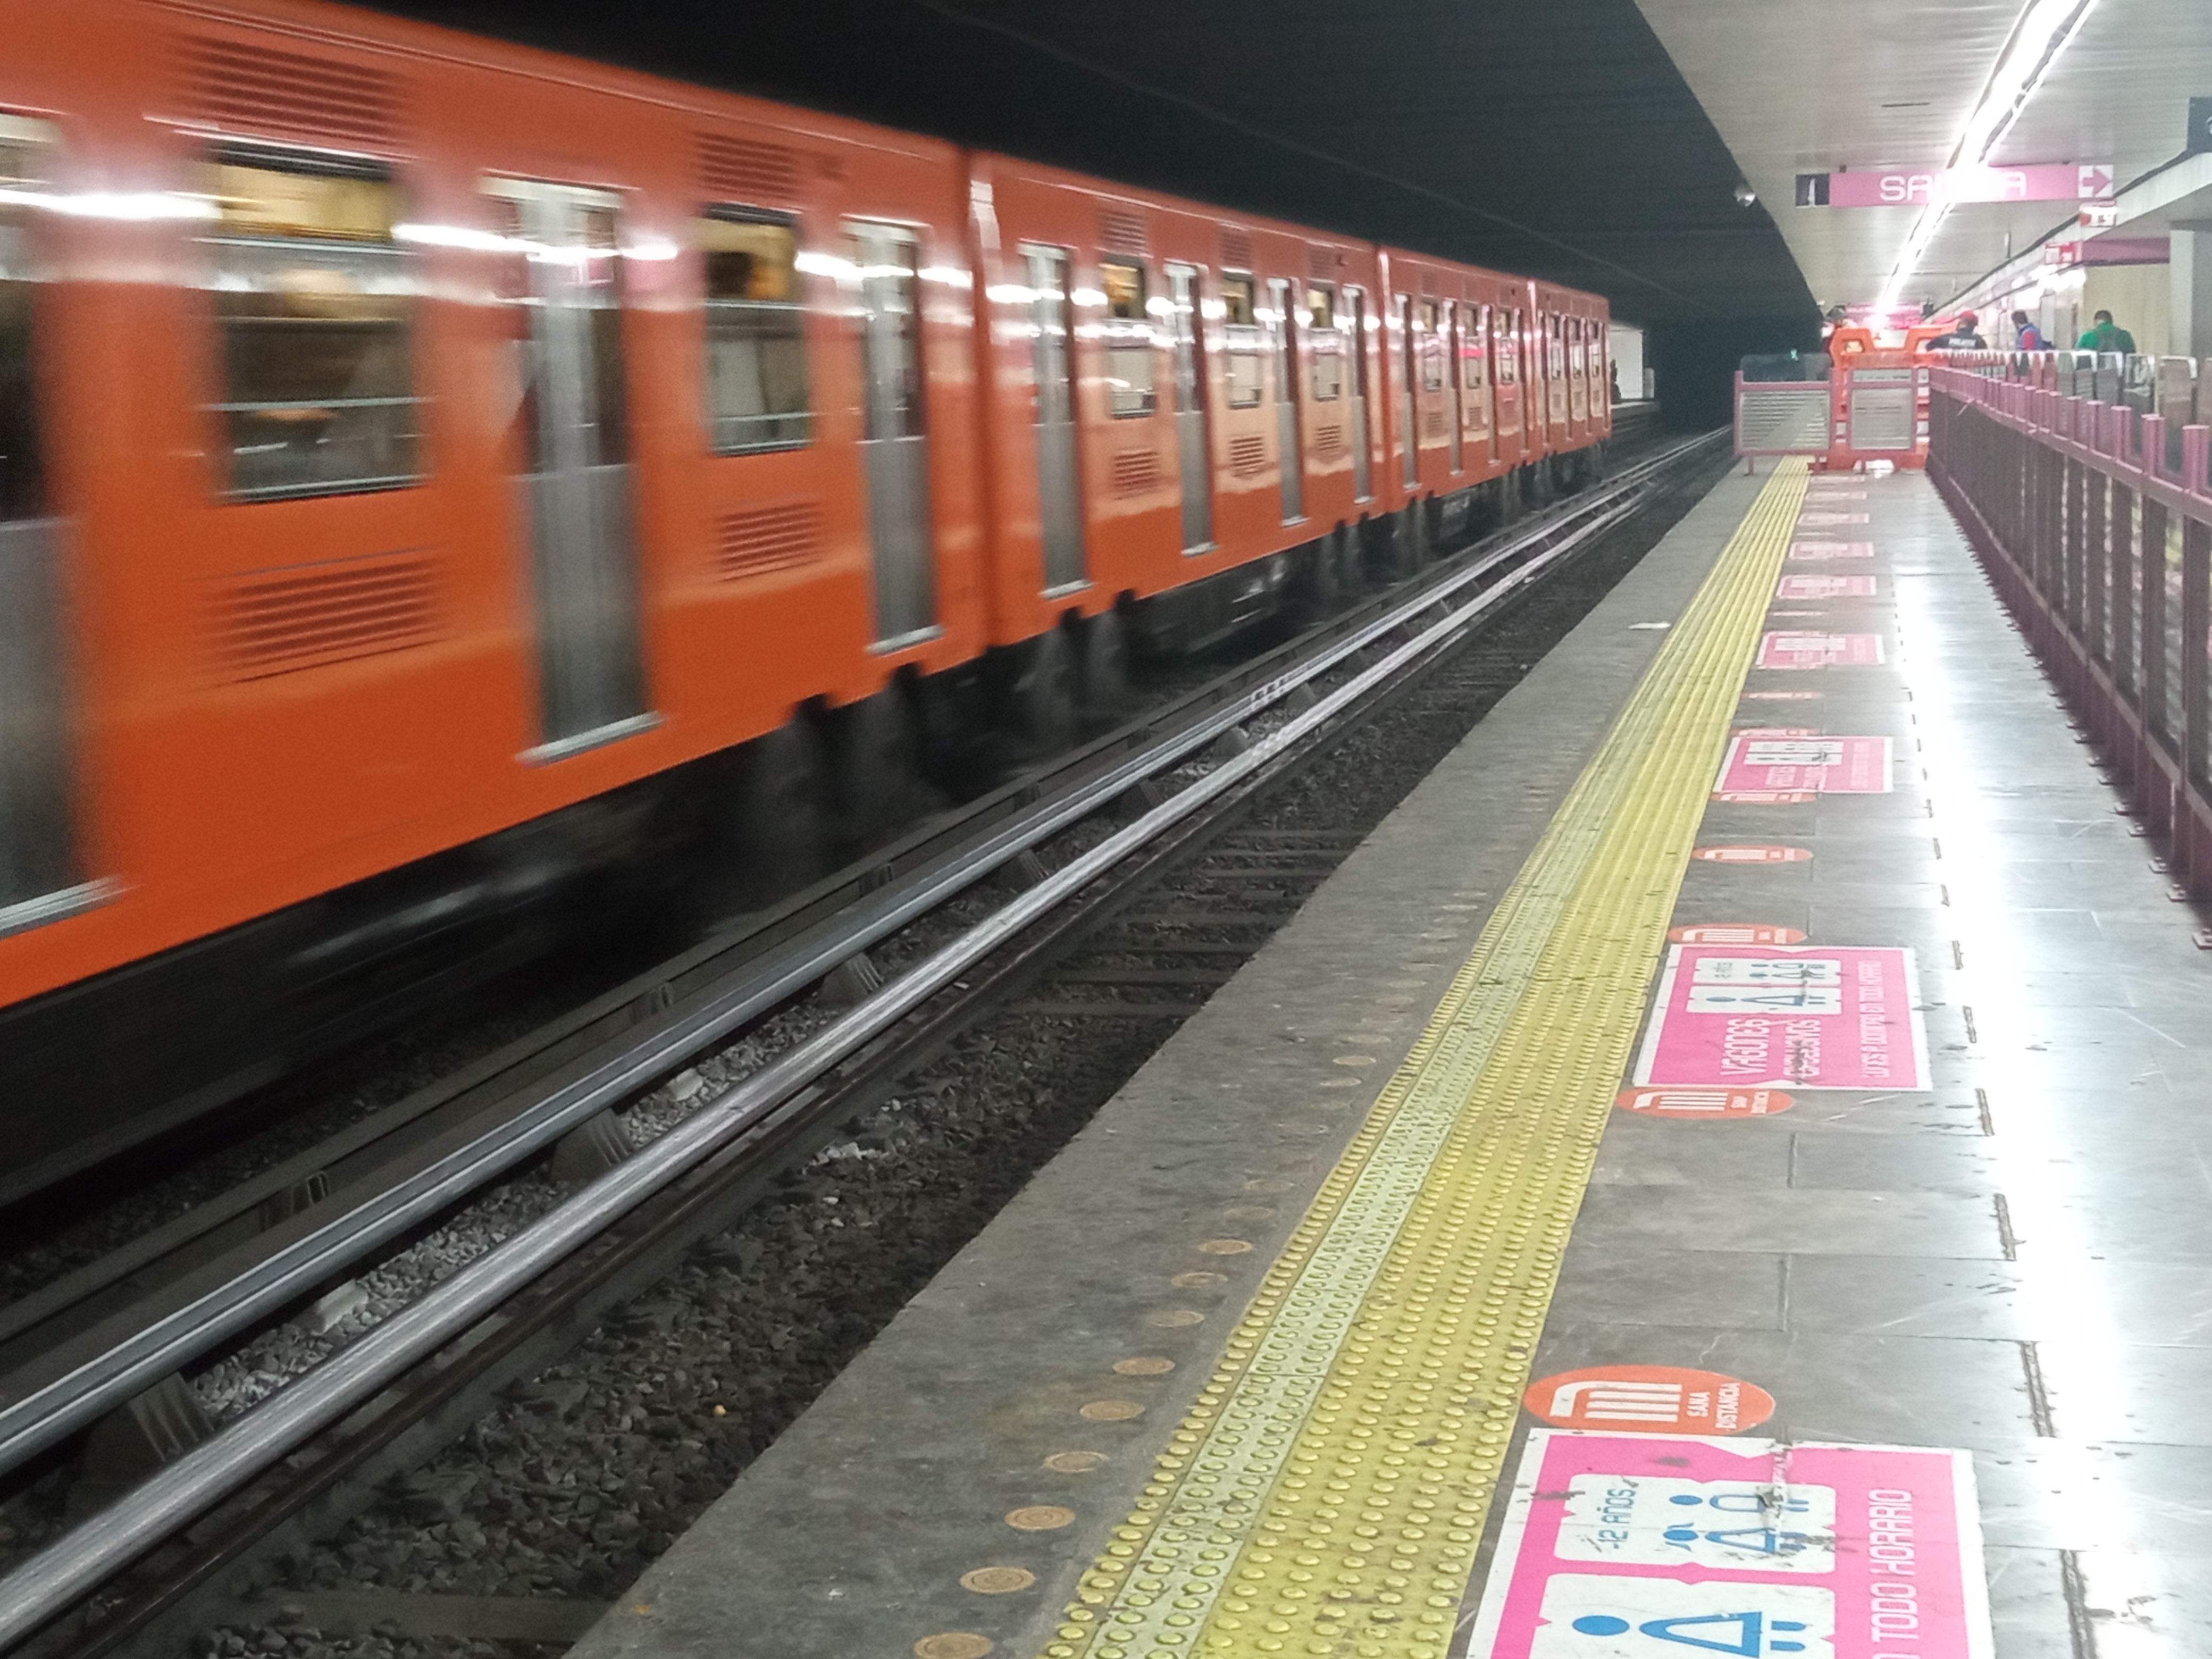 La Línea naranja presenta un retraso en los trenes de más de 30 minutos, según usuarios (Karina Hernández / Infobae)